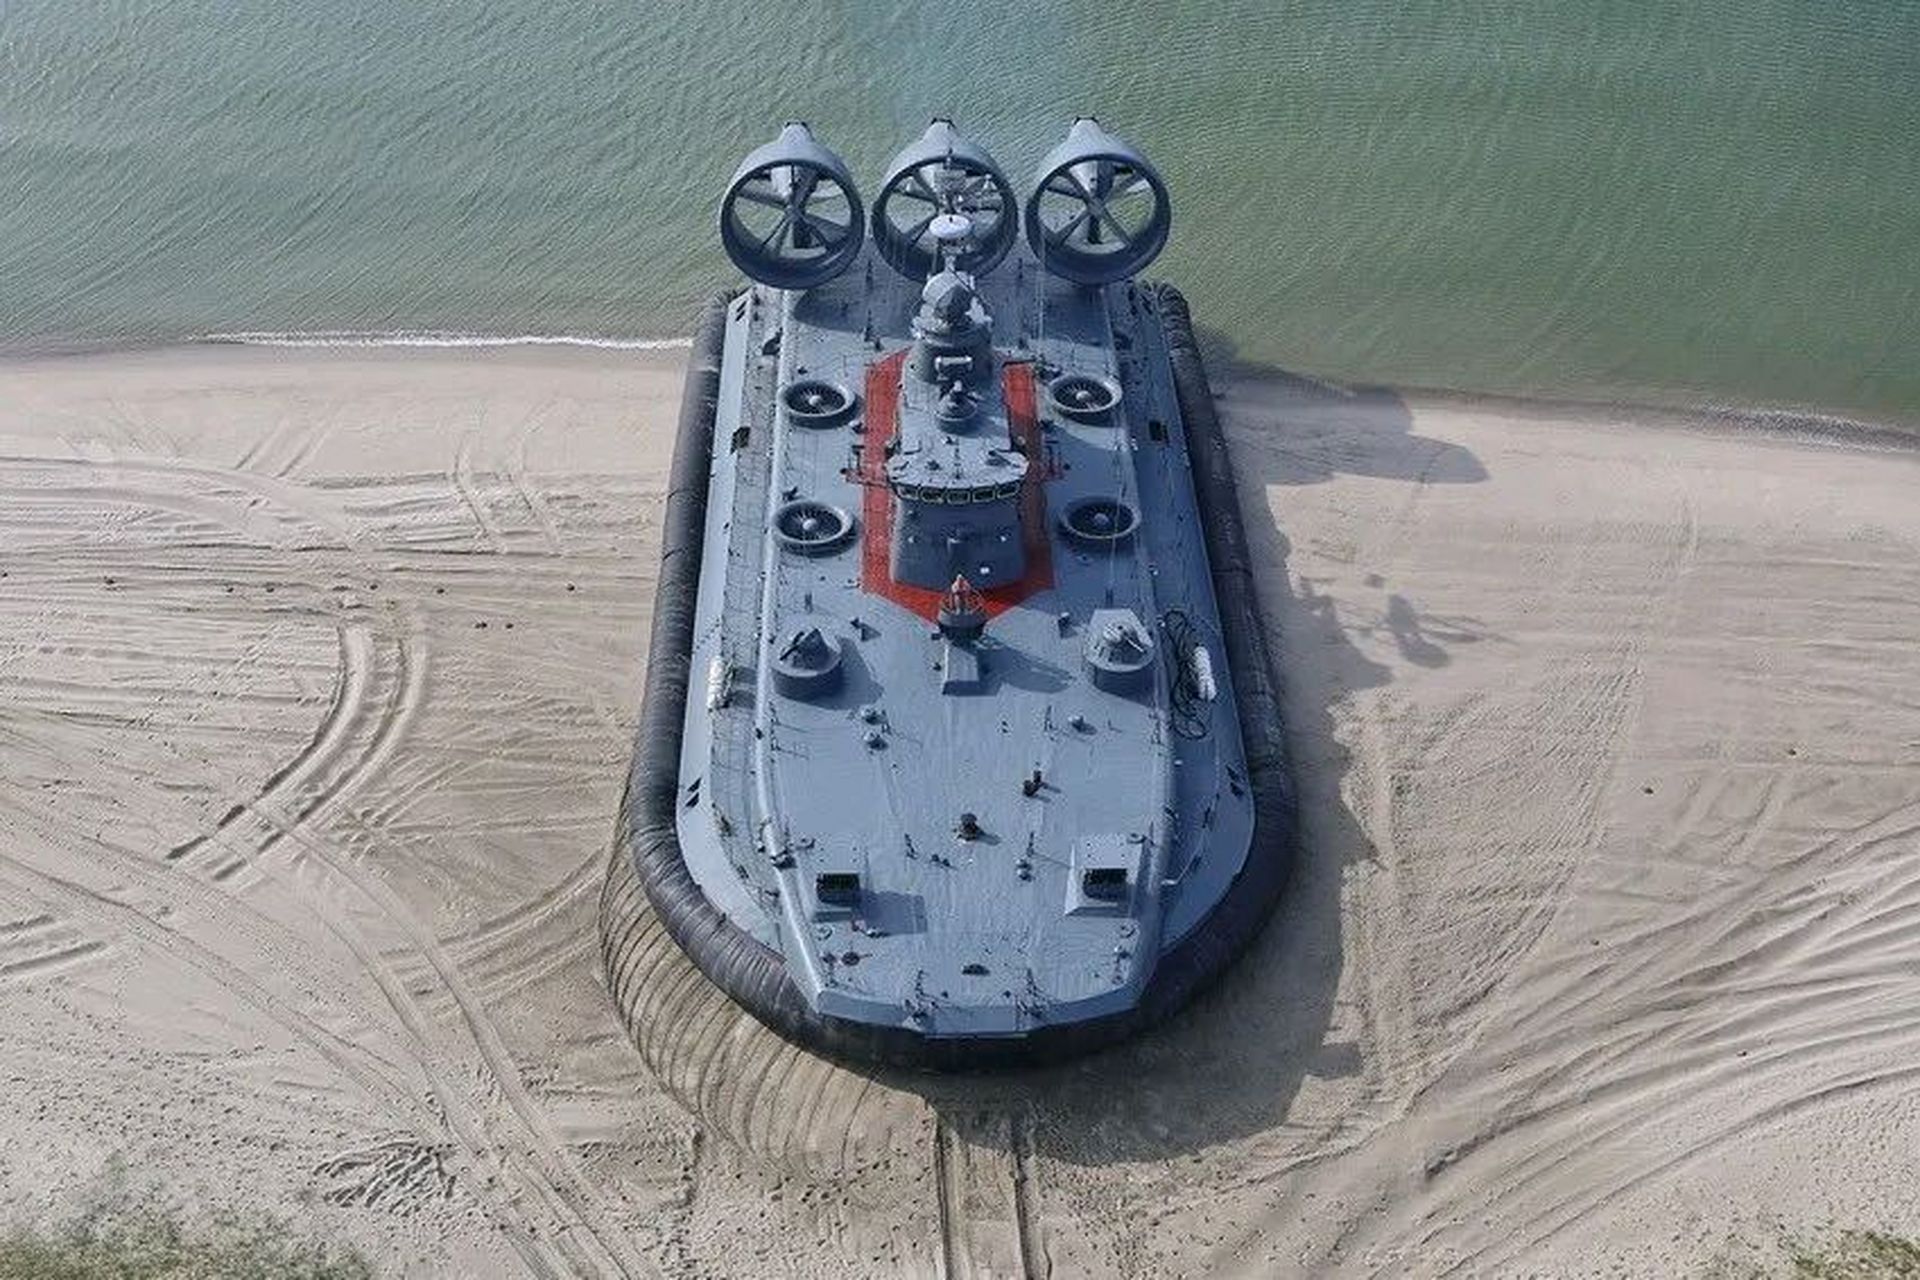 舰船欣赏:俄罗斯12322型气垫登陆艇,绰号欧洲野牛世界上最大的气垫